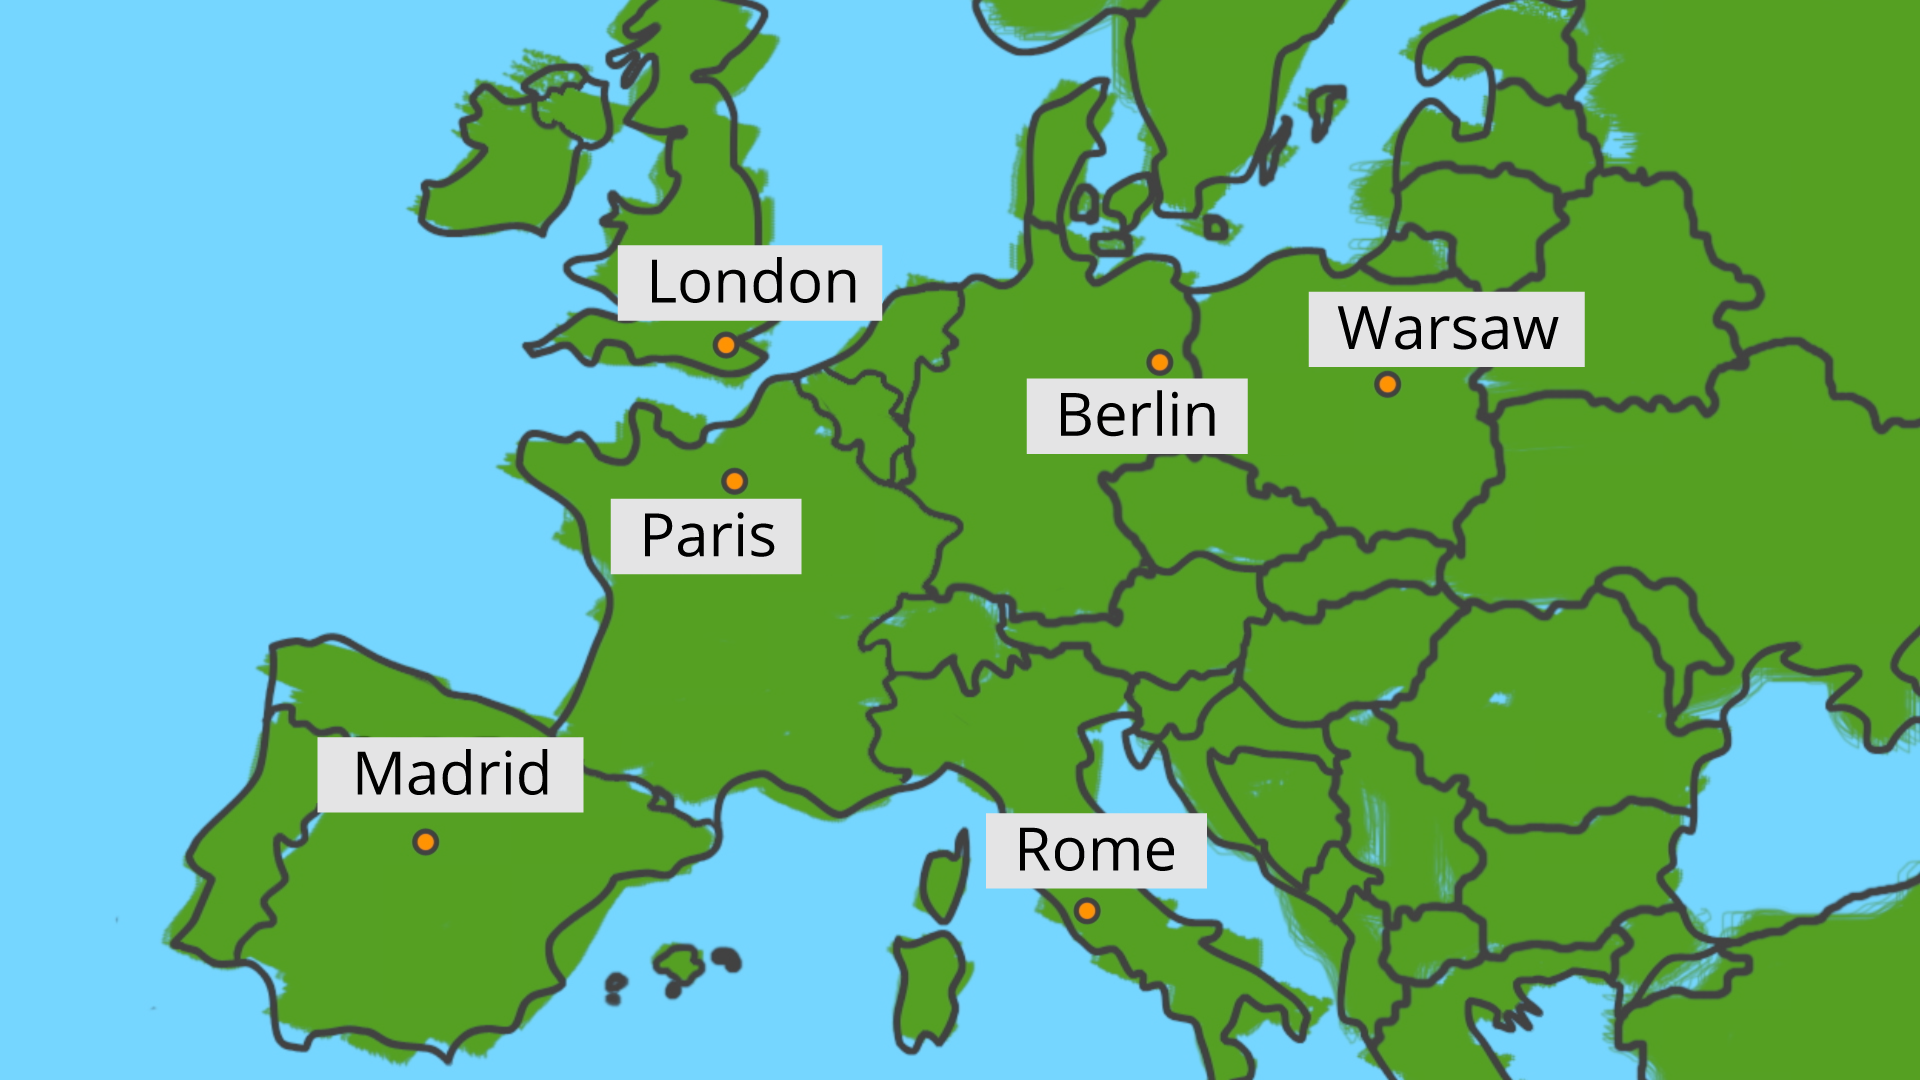 Rysunek przedstawia mapę Europy z zaznaczonymi na niej w postaci punktów stolicami niektórych Państw: London, Warsaw, Berlin, Paris, Madrid, Rome.